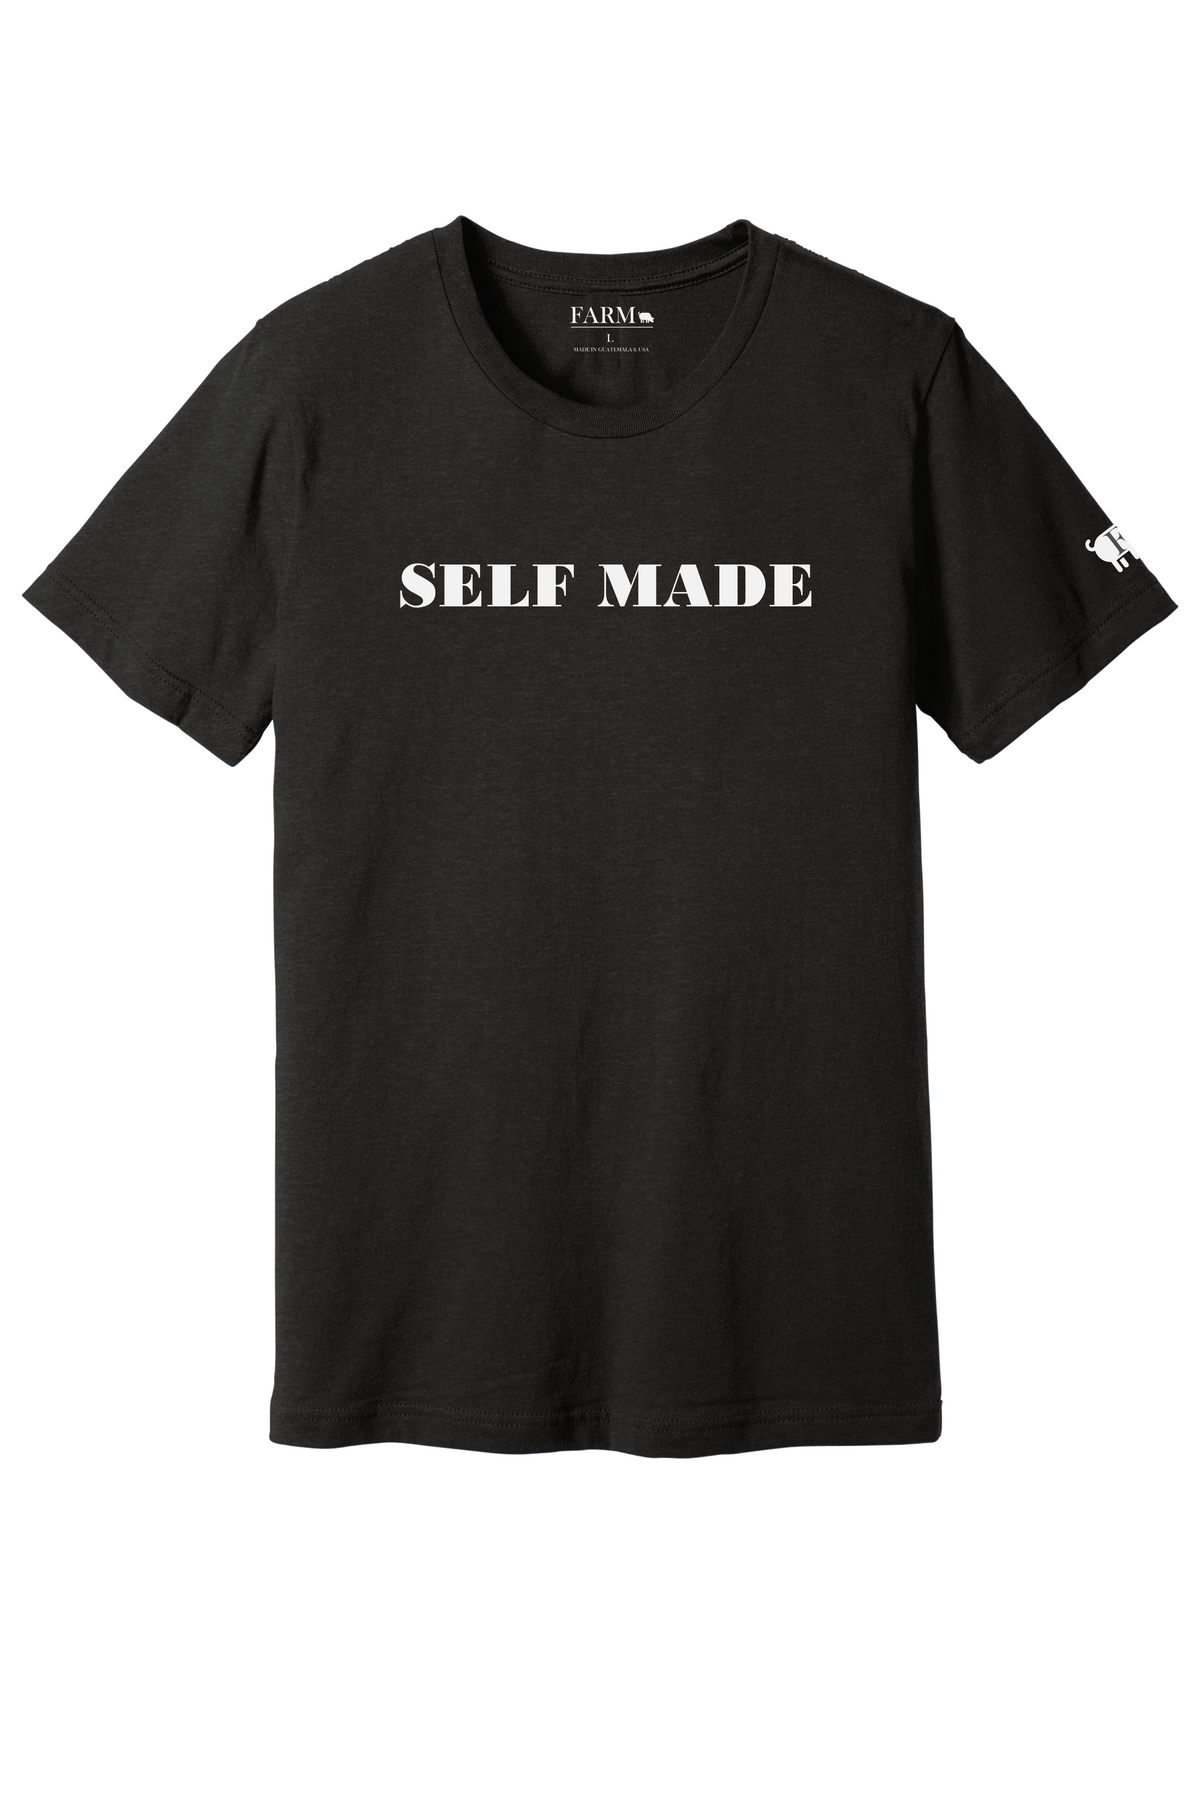 SELF T-Shirt Adult – USA